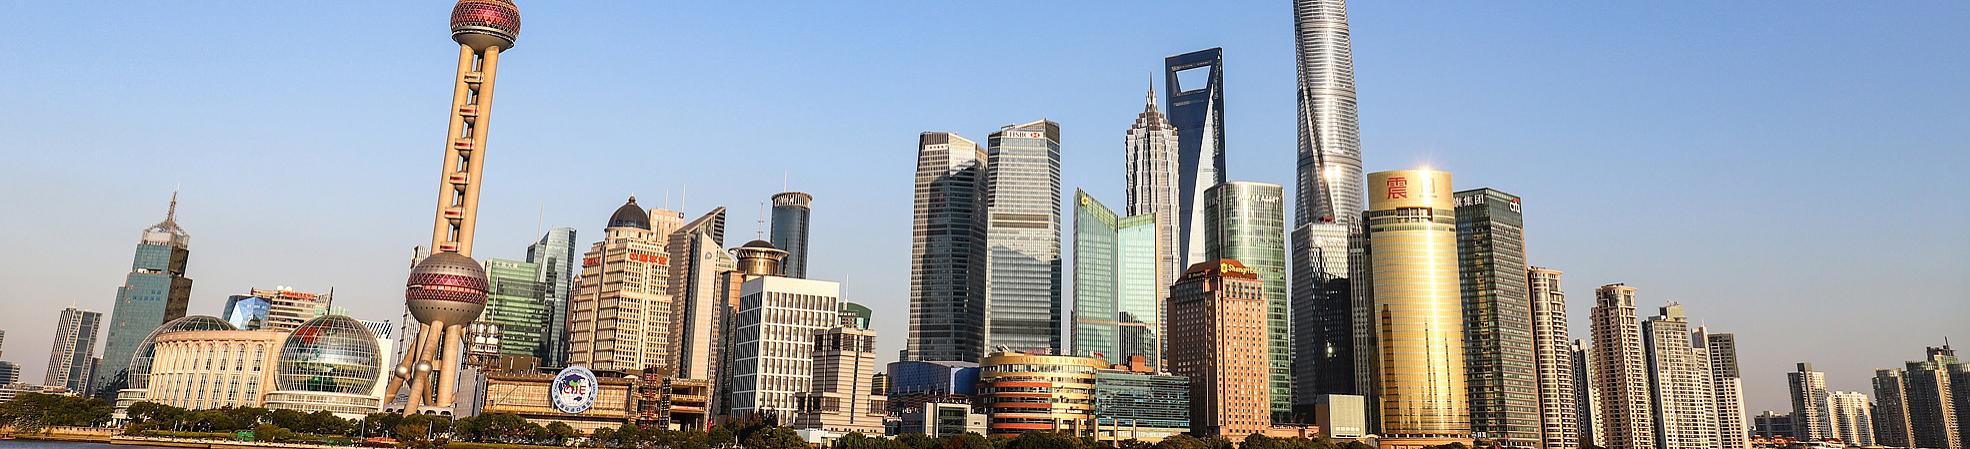 Make Your Shopping in Shanghai more Rewarding